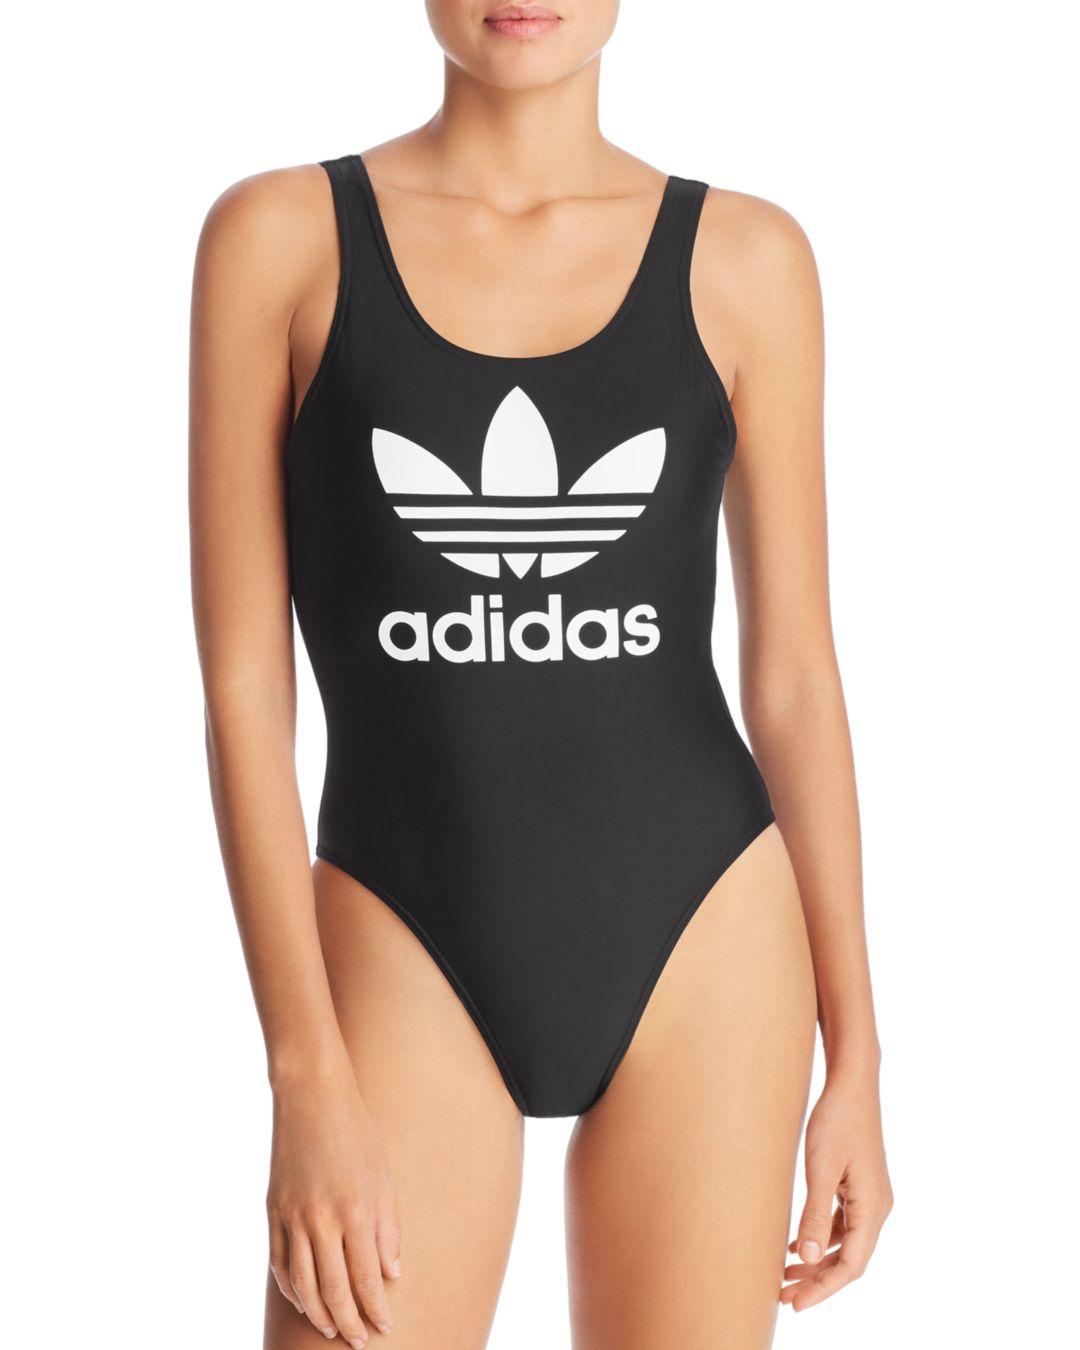 adidas black bathing suit